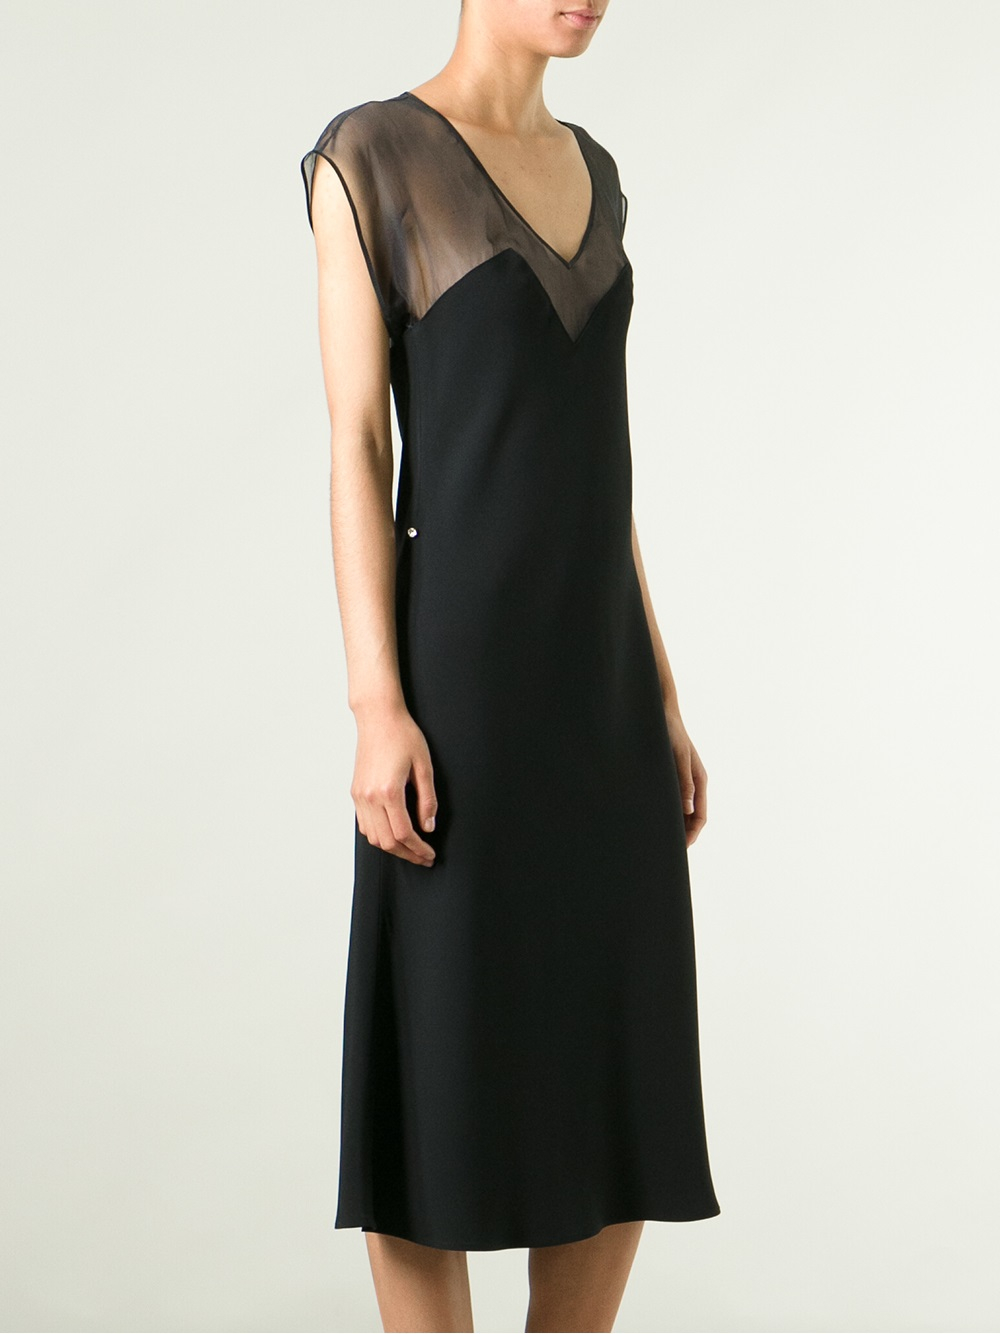 Sonia rykiel 90S Sheer Top Panel Dress in Black | Lyst